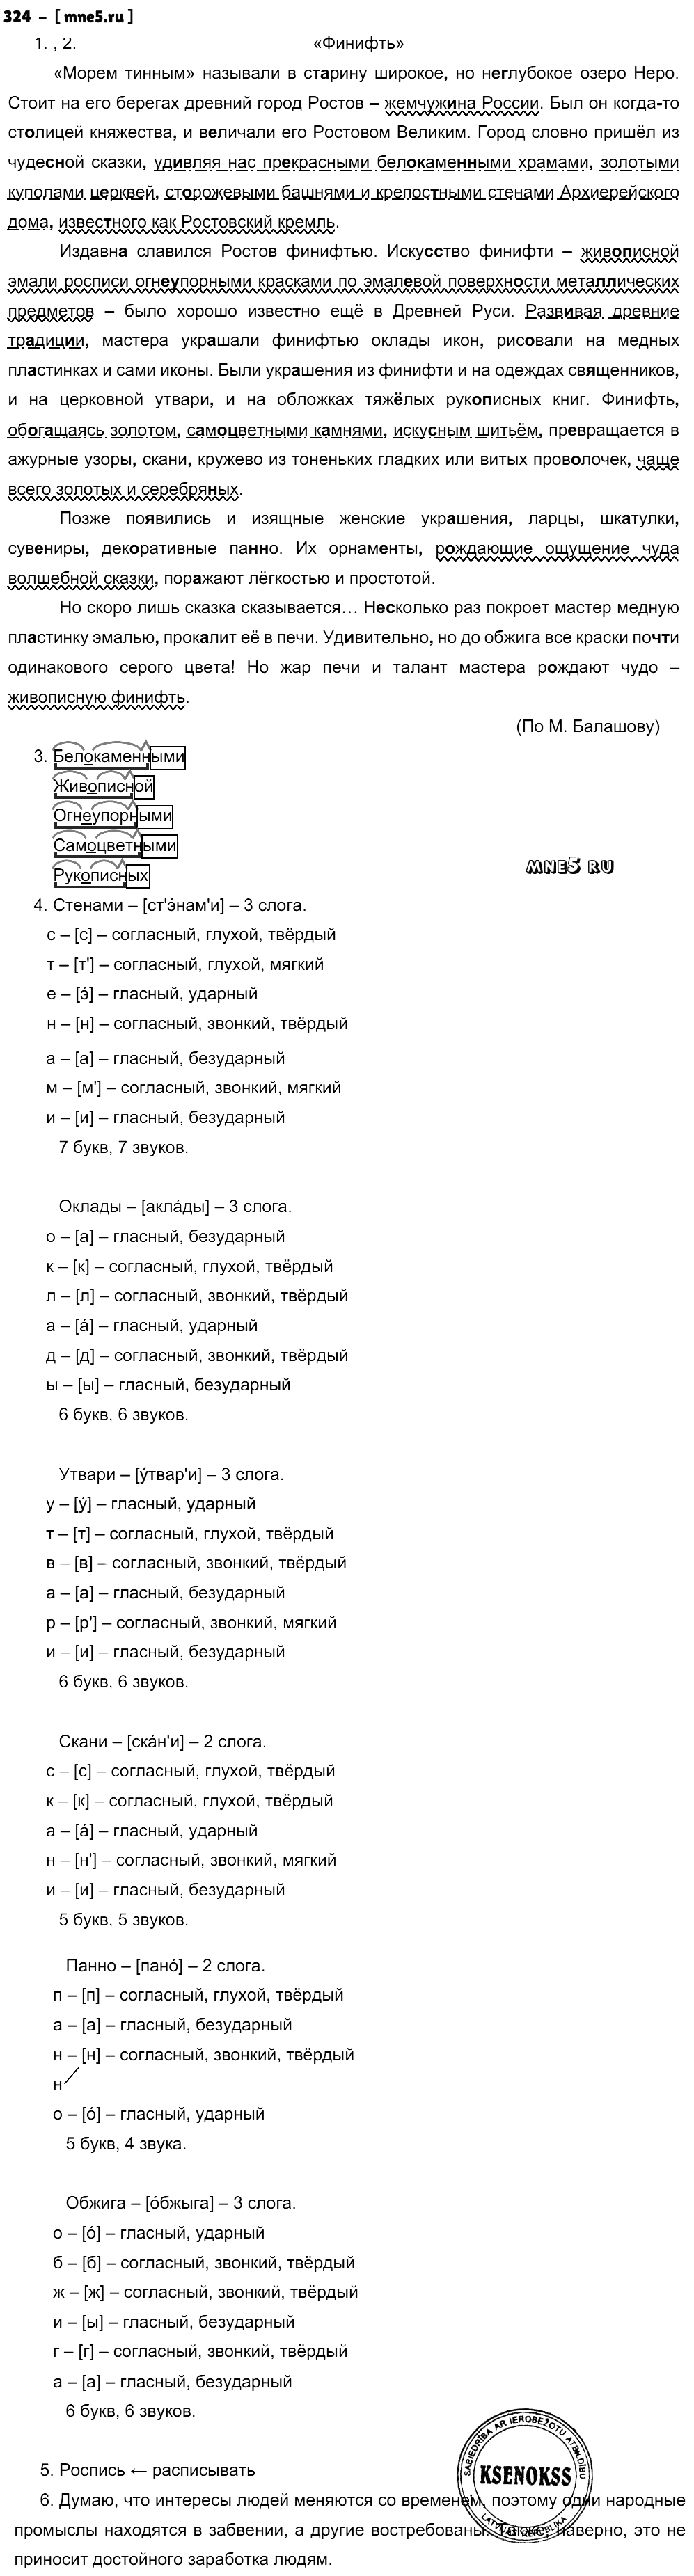 ГДЗ Русский язык 9 класс - 324